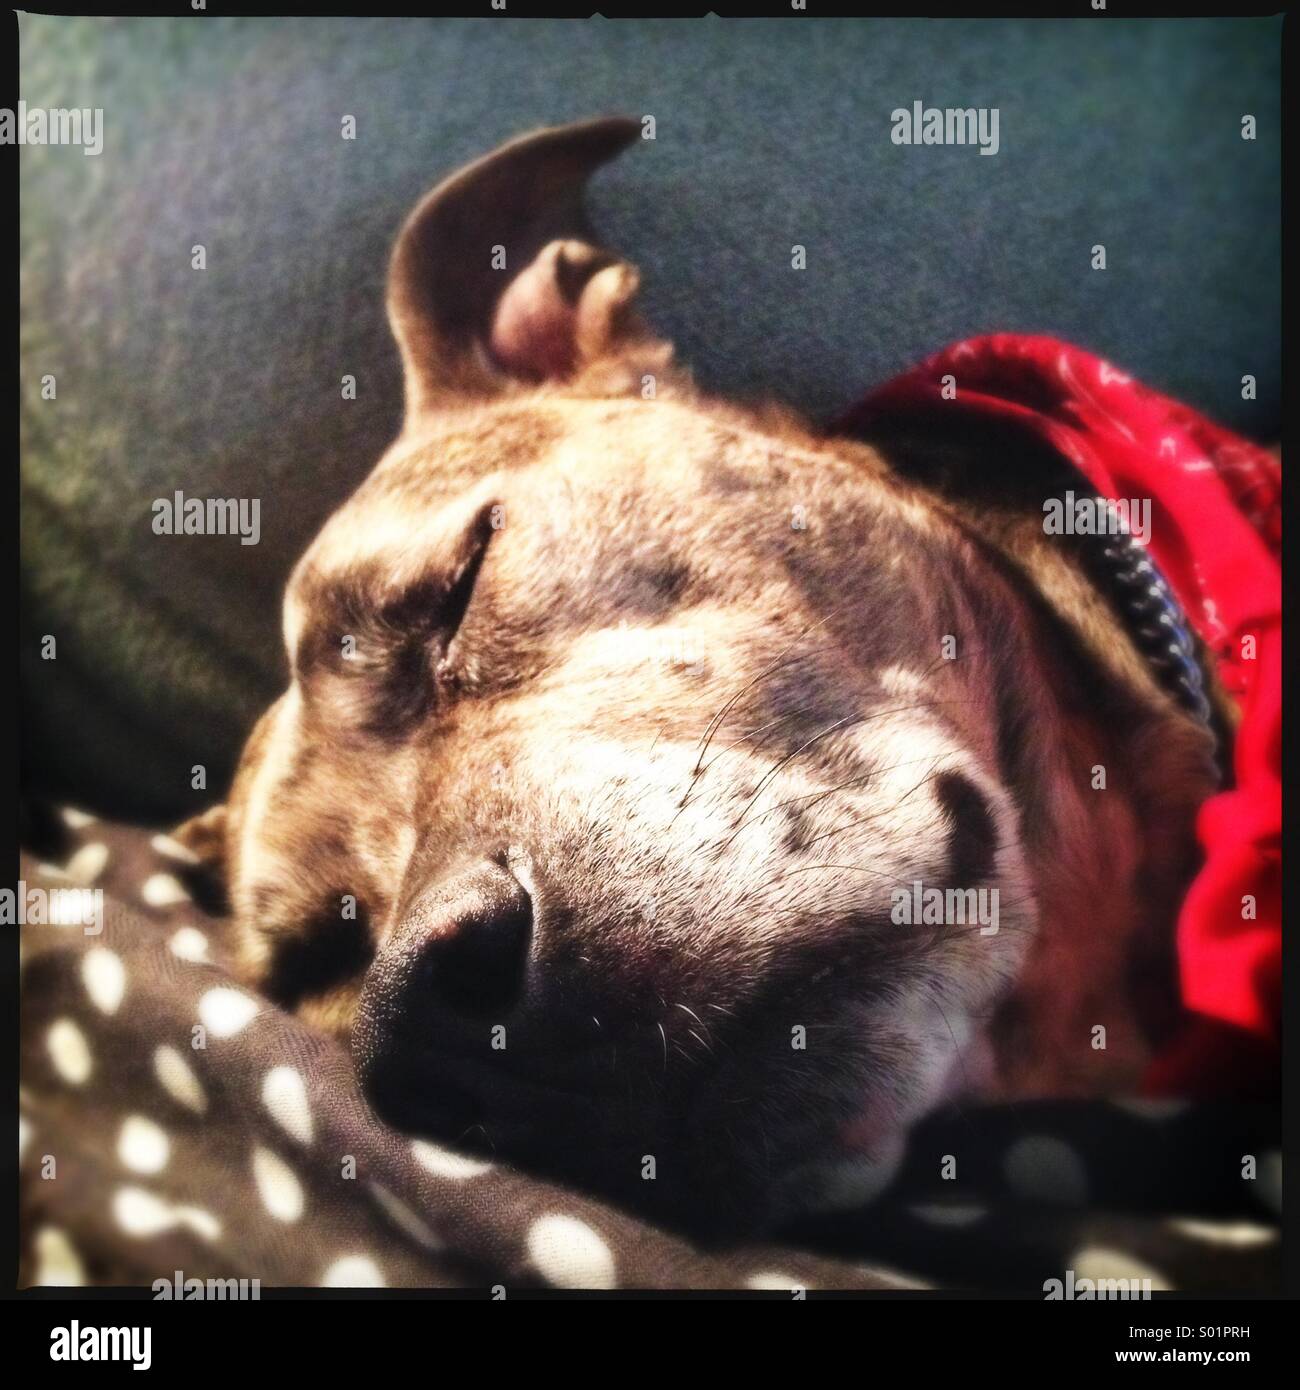 Dog Sleeping on Polka Dots Stock Photo